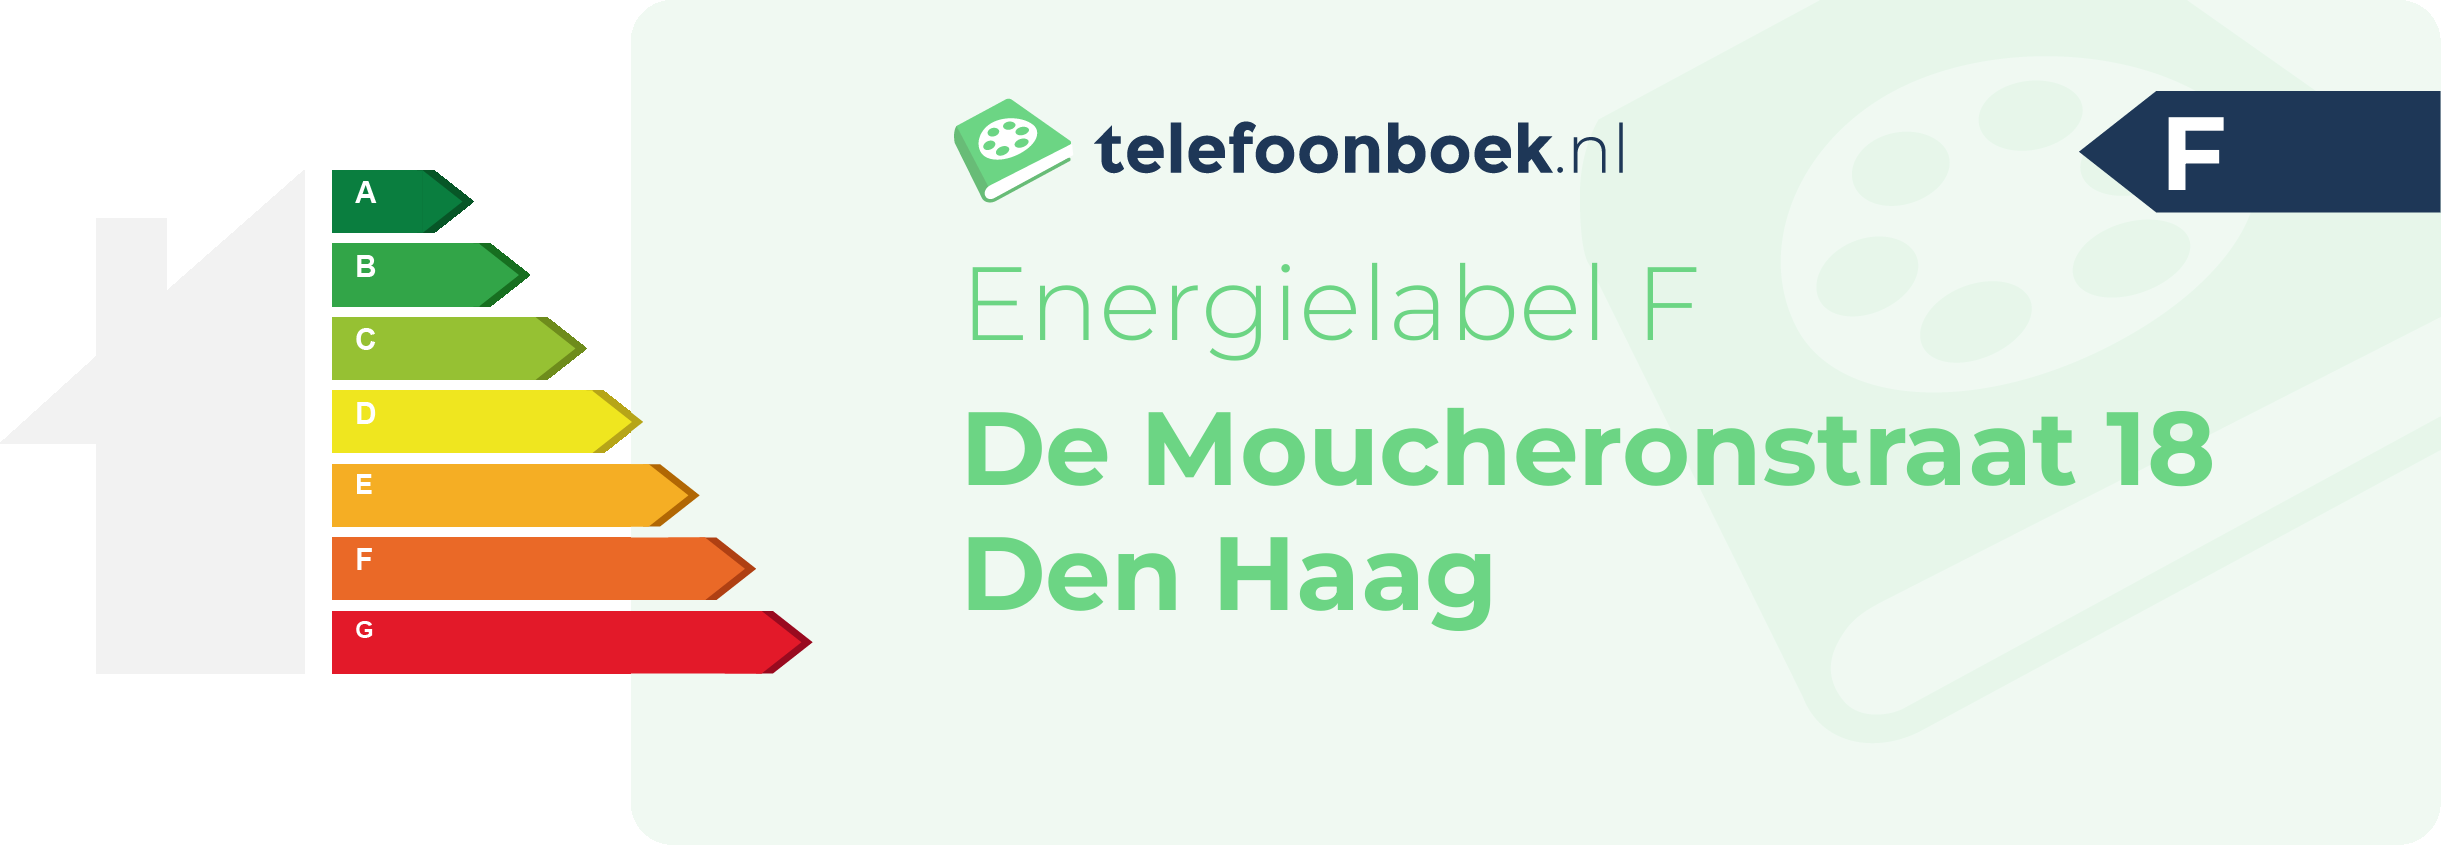 Energielabel De Moucheronstraat 18 Den Haag